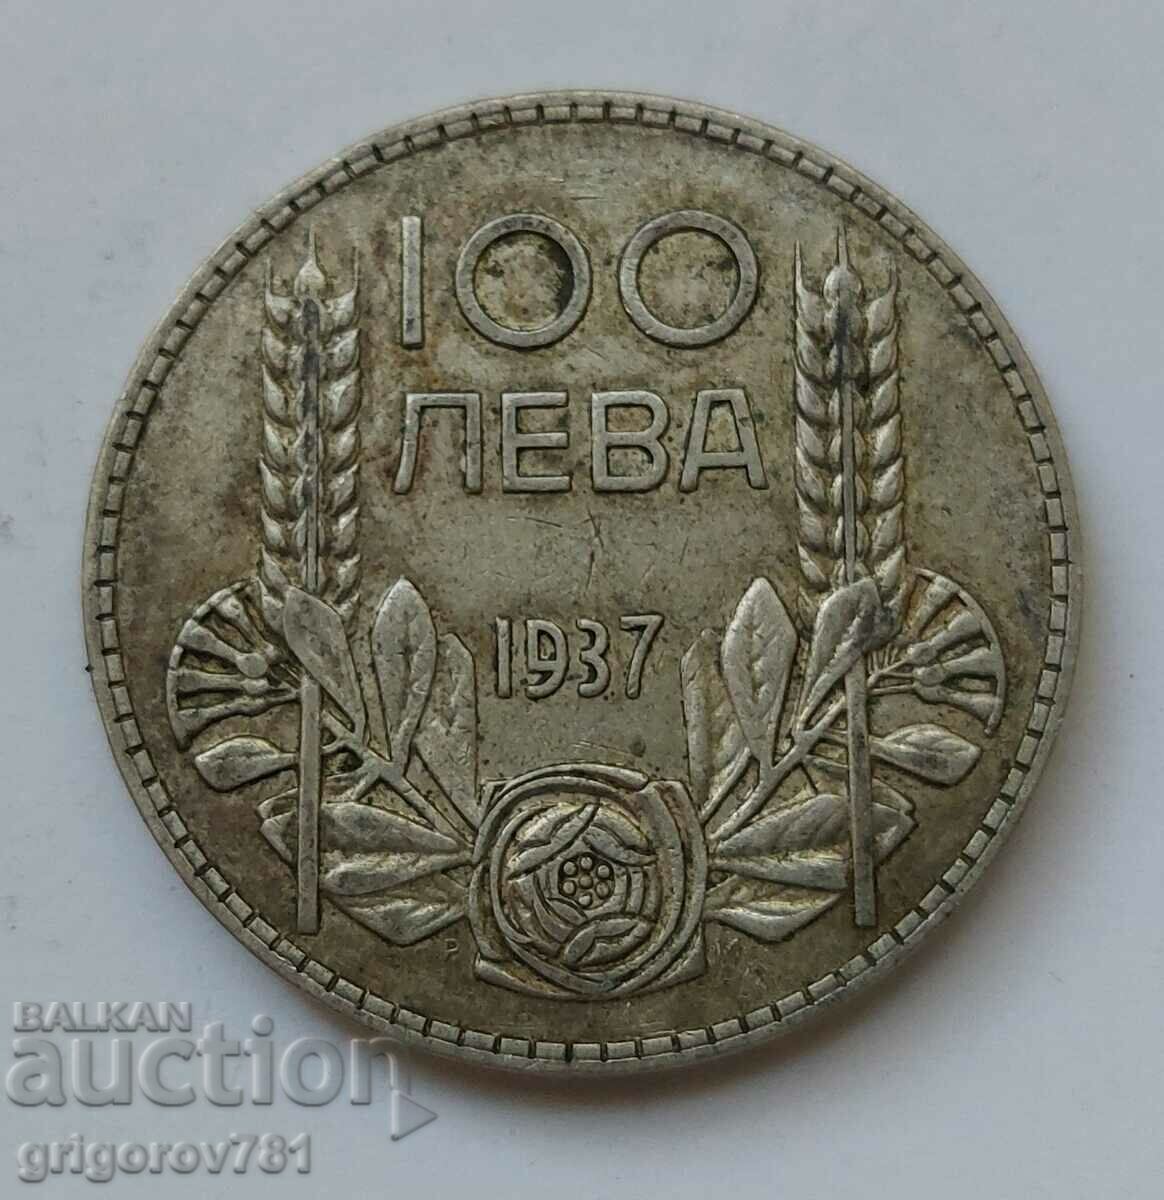 Ασήμι 100 λέβα Βουλγαρία 1937 - ασημένιο νόμισμα #116